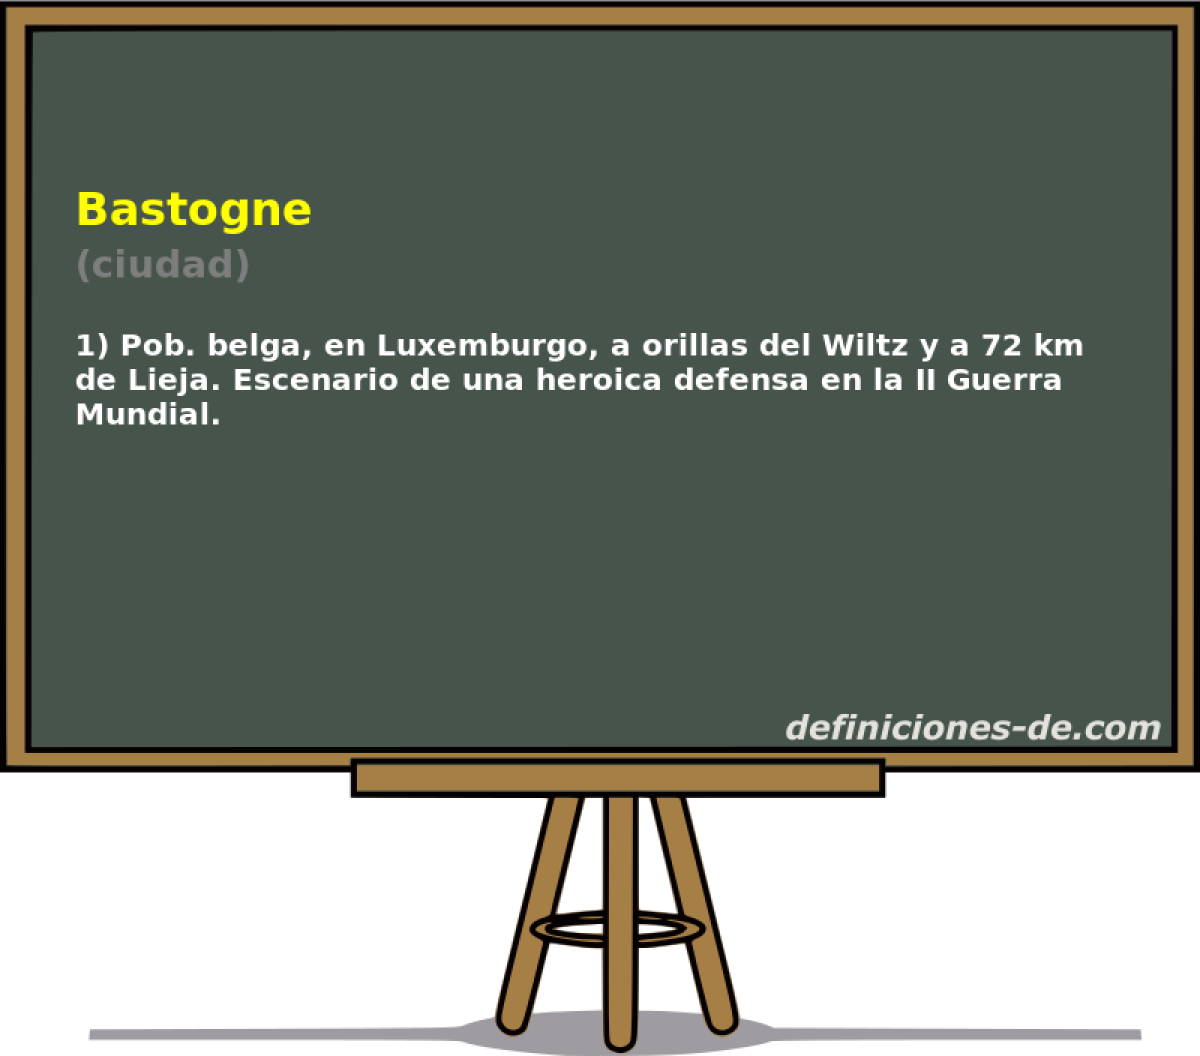 Bastogne (ciudad)